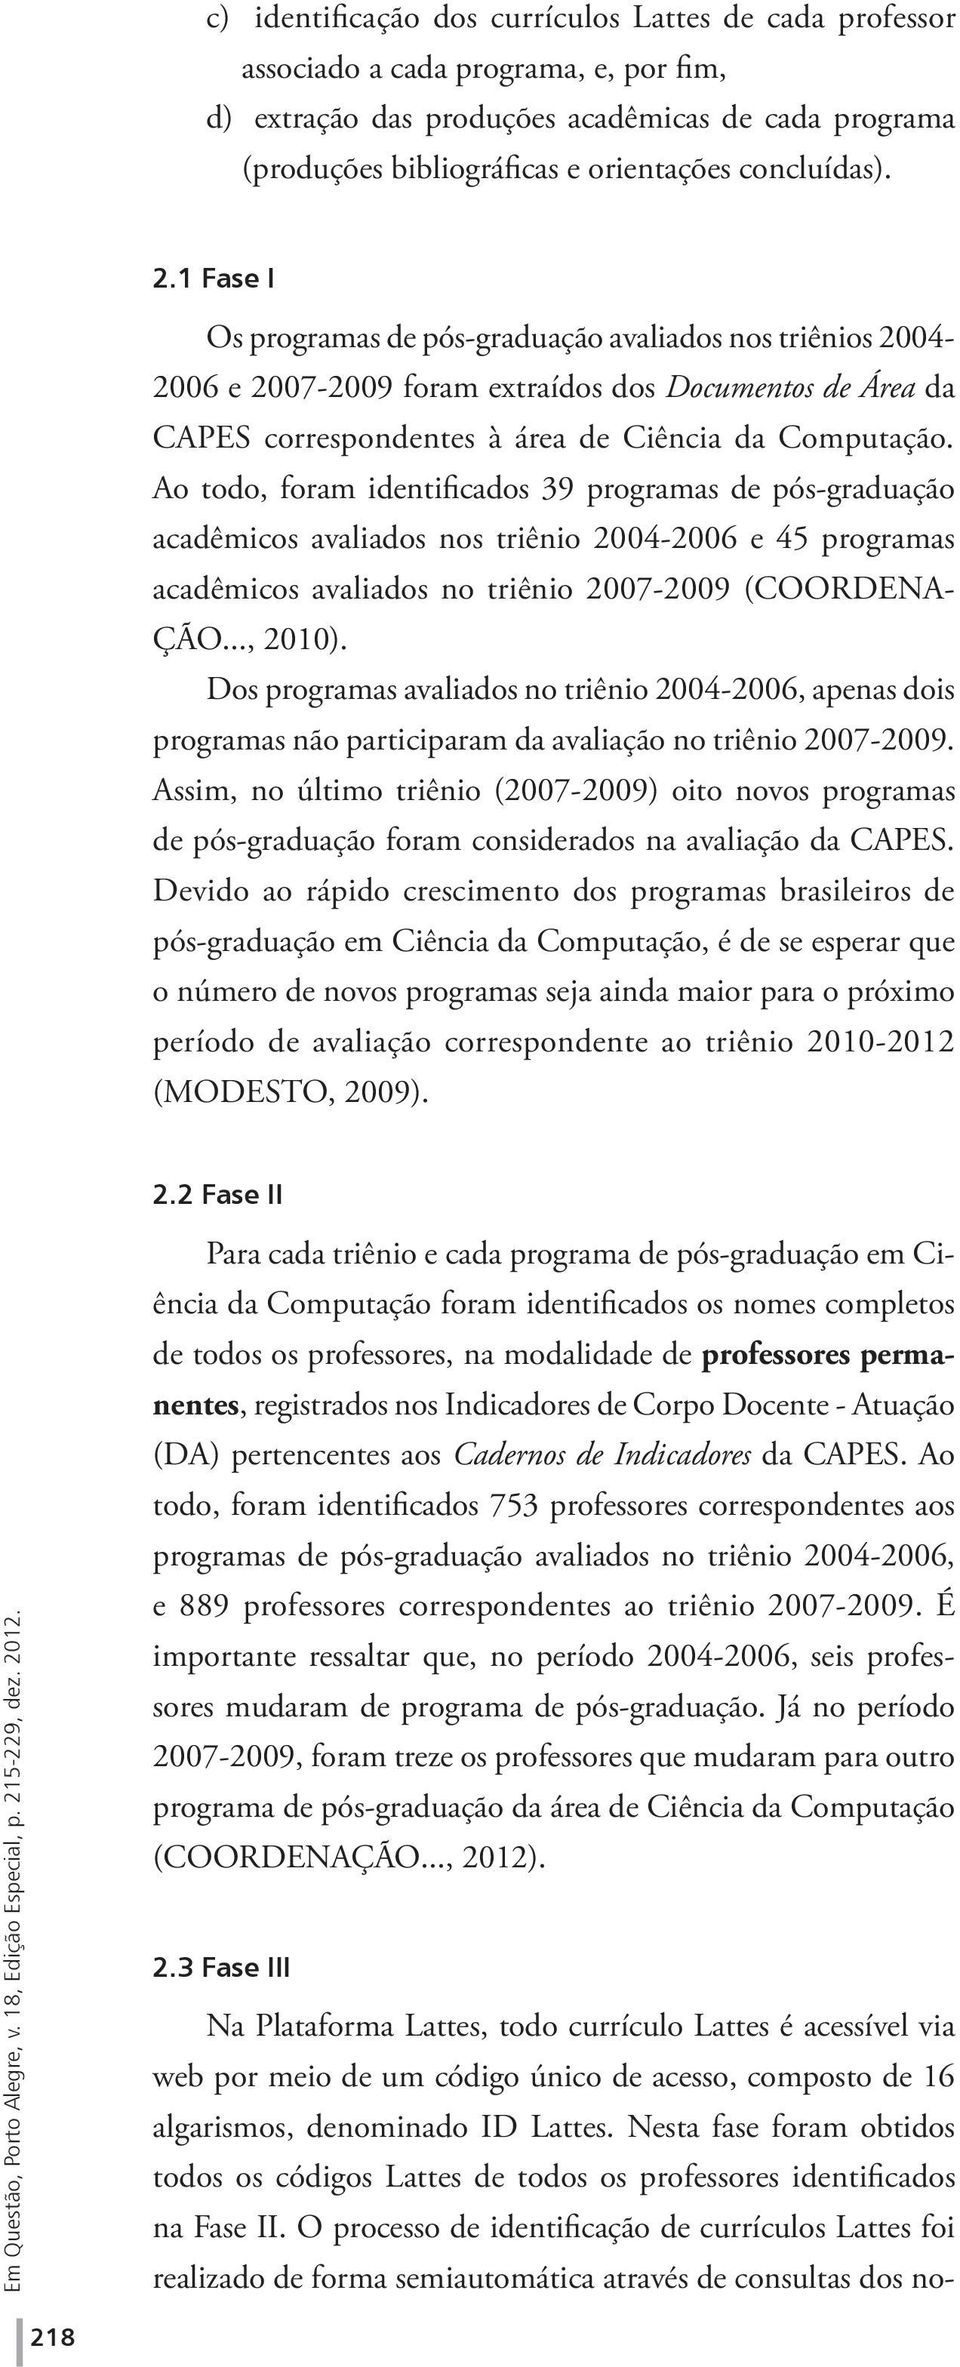 Ao todo, foram identificados 39 programas de pós-graduação acadêmicos avaliados nos triênio 2004-2006 e 45 programas acadêmicos avaliados no triênio 2007-2009 (COORDENA- ÇÃO..., 2010).